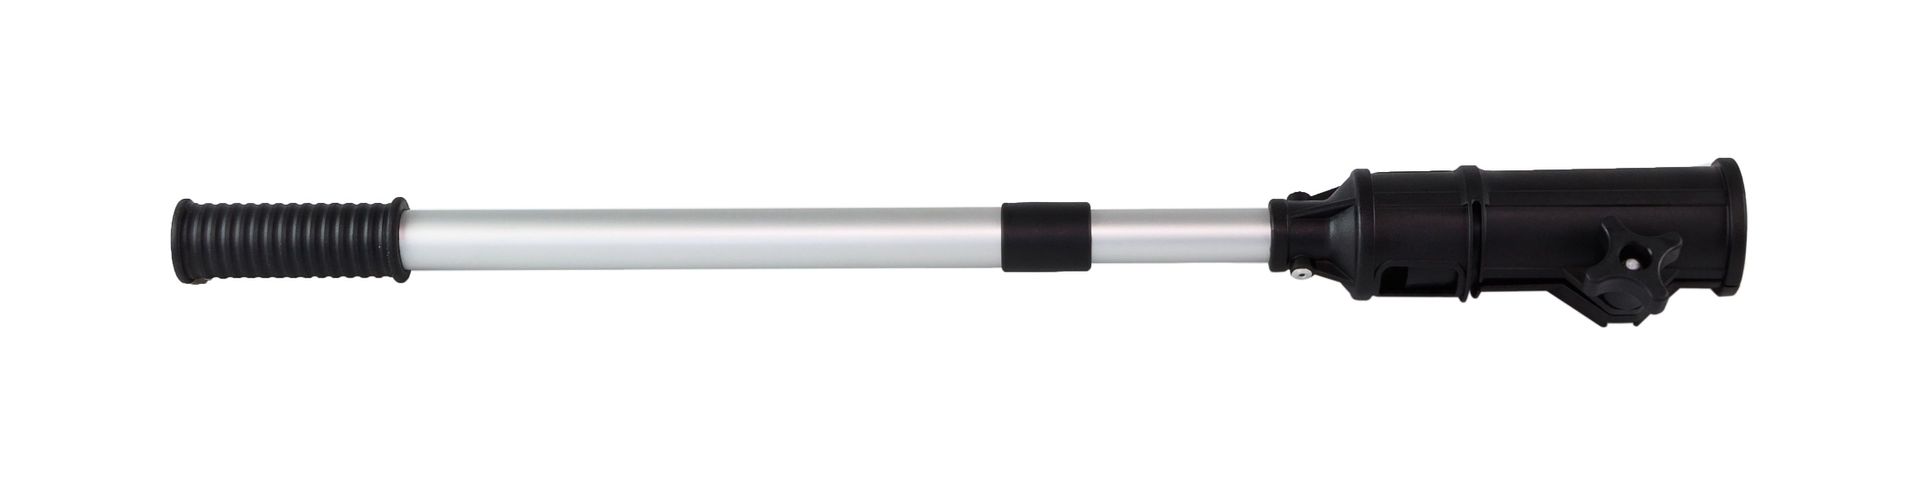 Удлинитель румпеля телескопический 64-100 см C16240 удлинитель телескопический ут к опрыскивателям рж